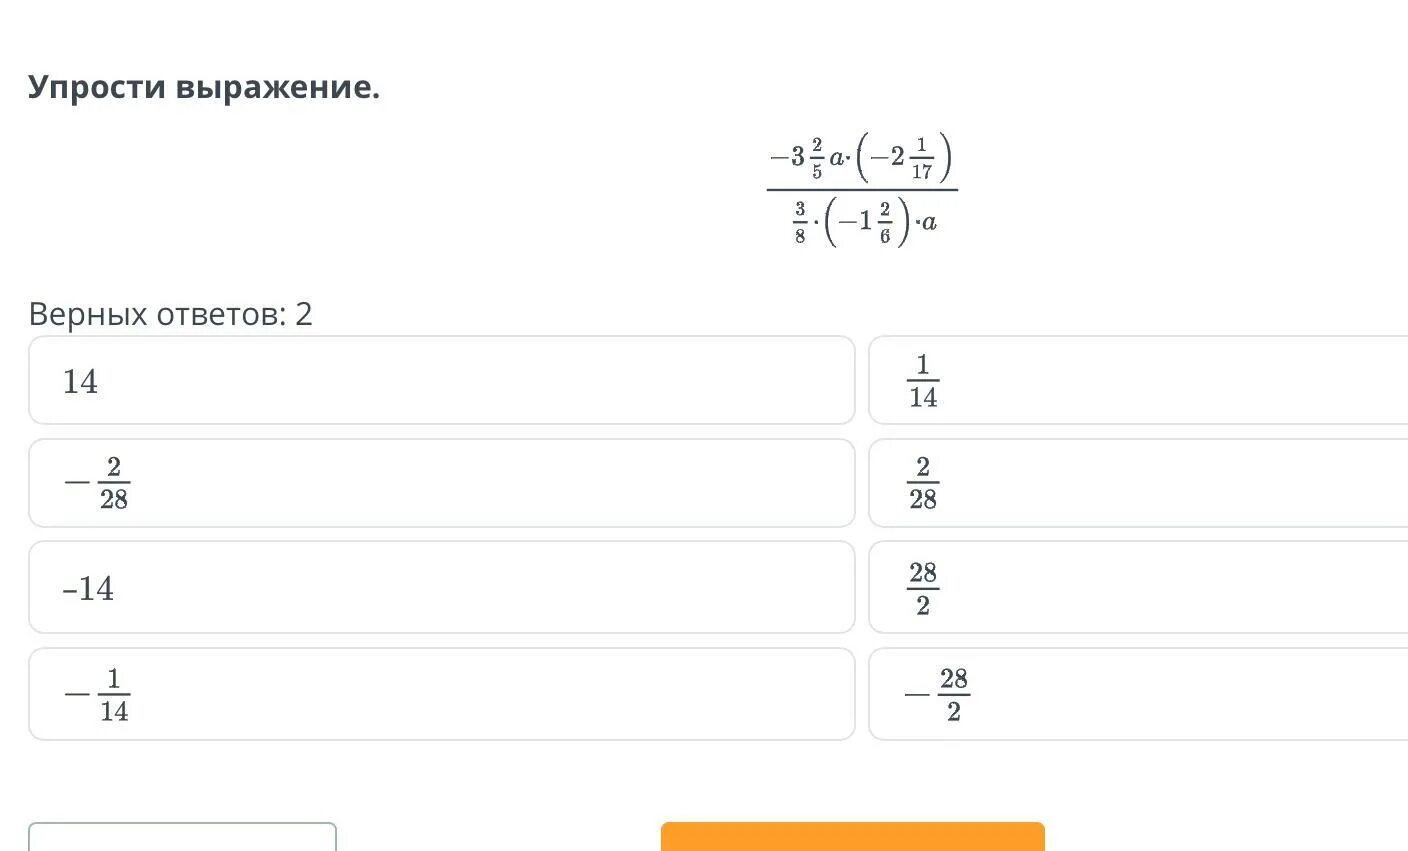 Тест 1 выражения ответы. Упрости и запиши верный ответ. Заполни таблицу y 2x. Посчитай отношение соседних элементов b1 -32 b2 -64 b3 -128 b4 -256.